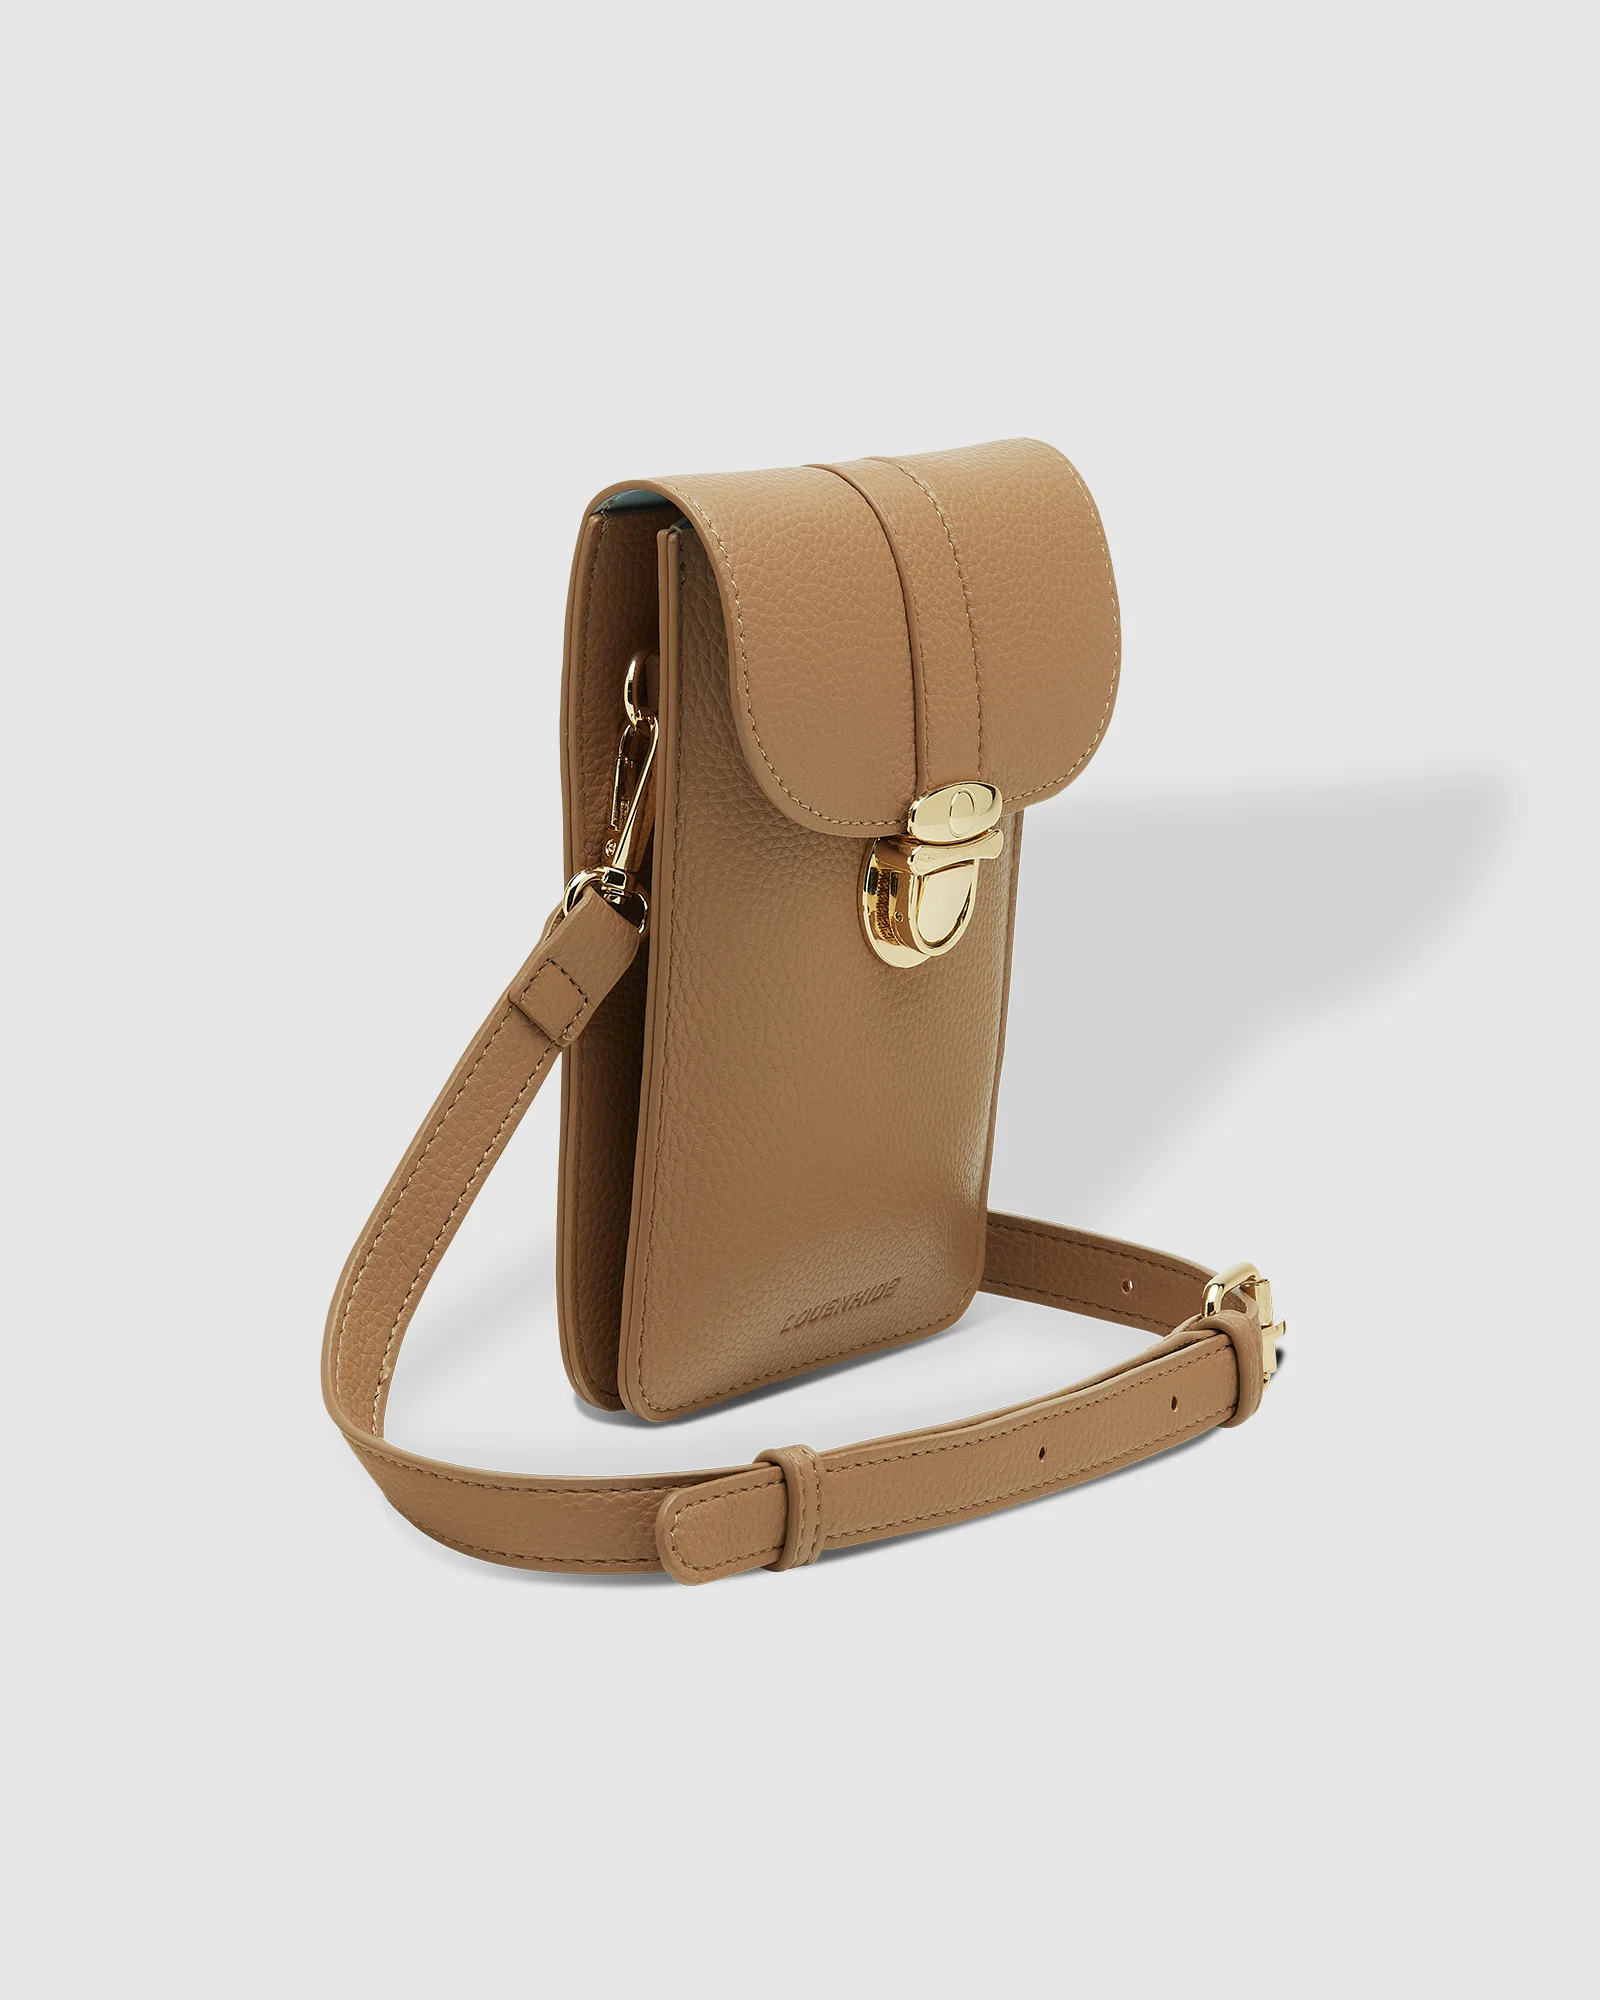 Louenhide Fontaine Phone Bag - Latte Accessories - Other Accessories - Handbags & Wallets by Louenhide | Grace the Boutique